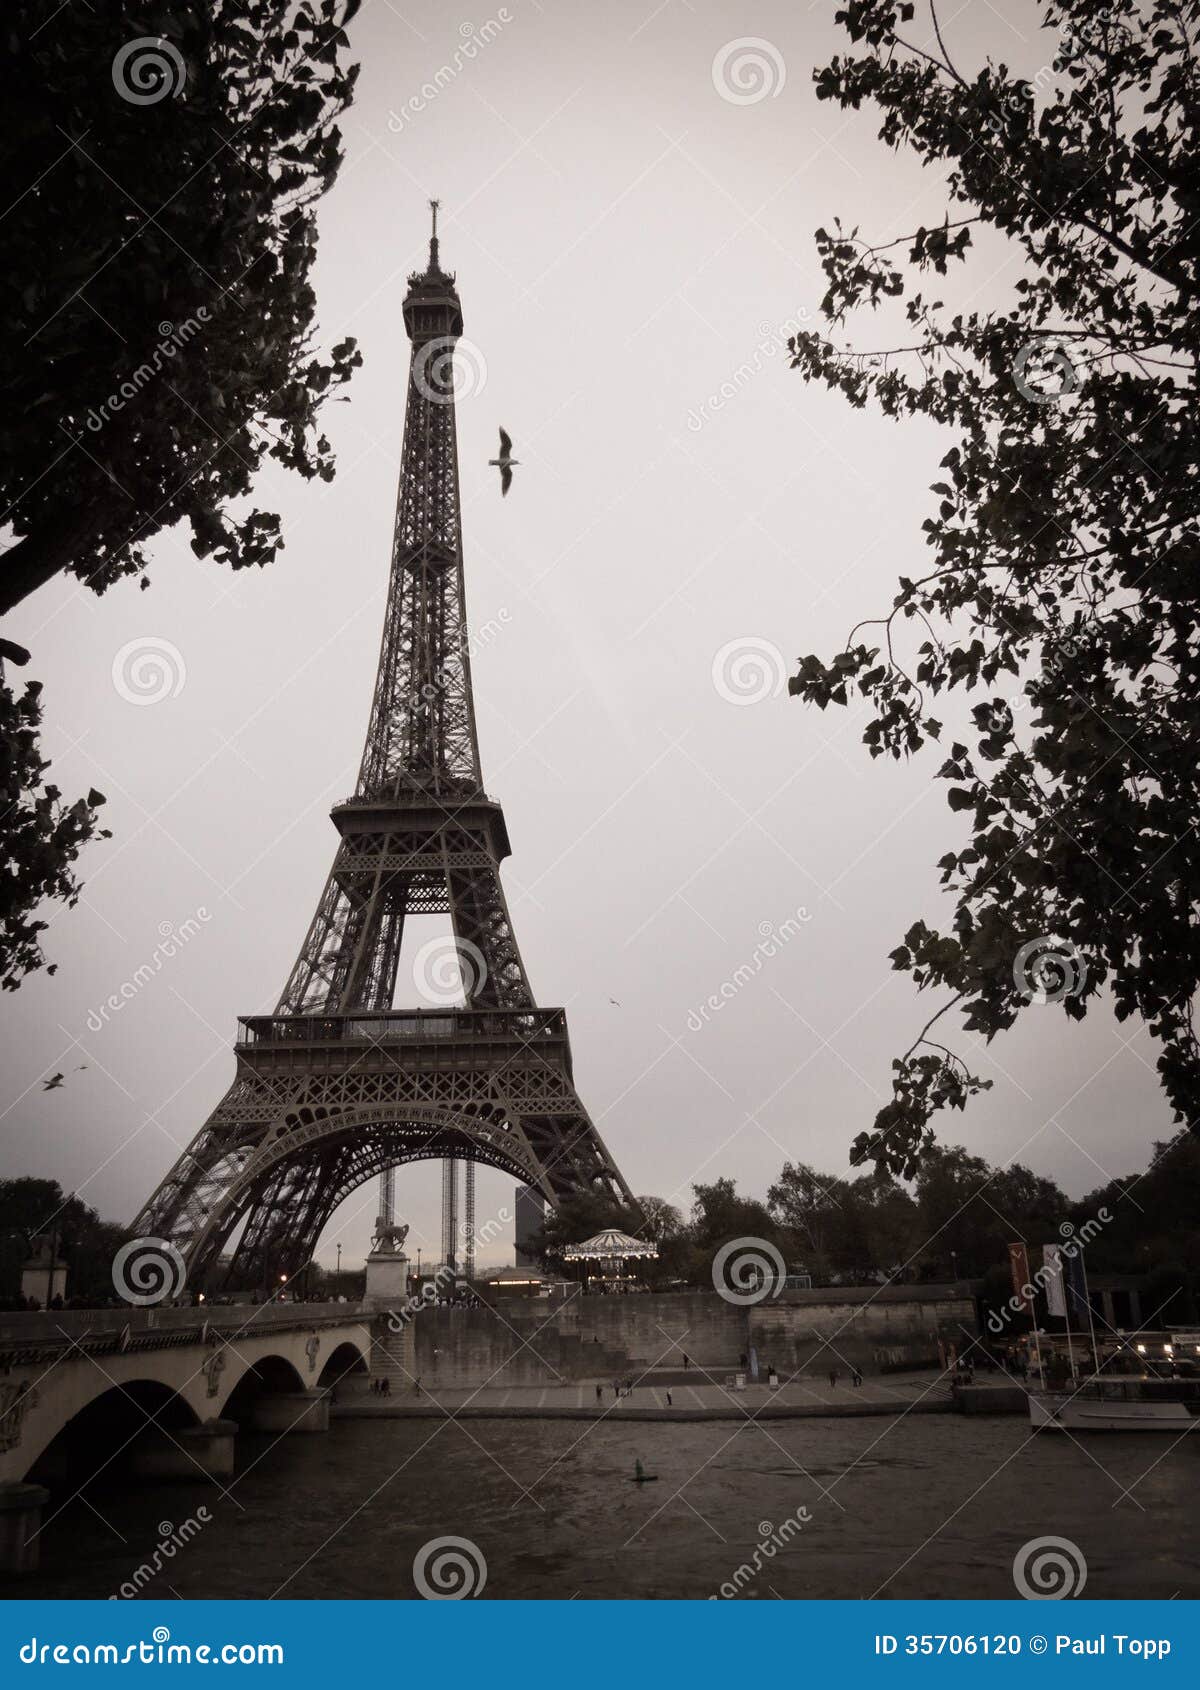 Torre Eiffel In Bianco E Nero Nella Citta Di Parigi Fotografia Stock Immagine Di Architettura Immagine